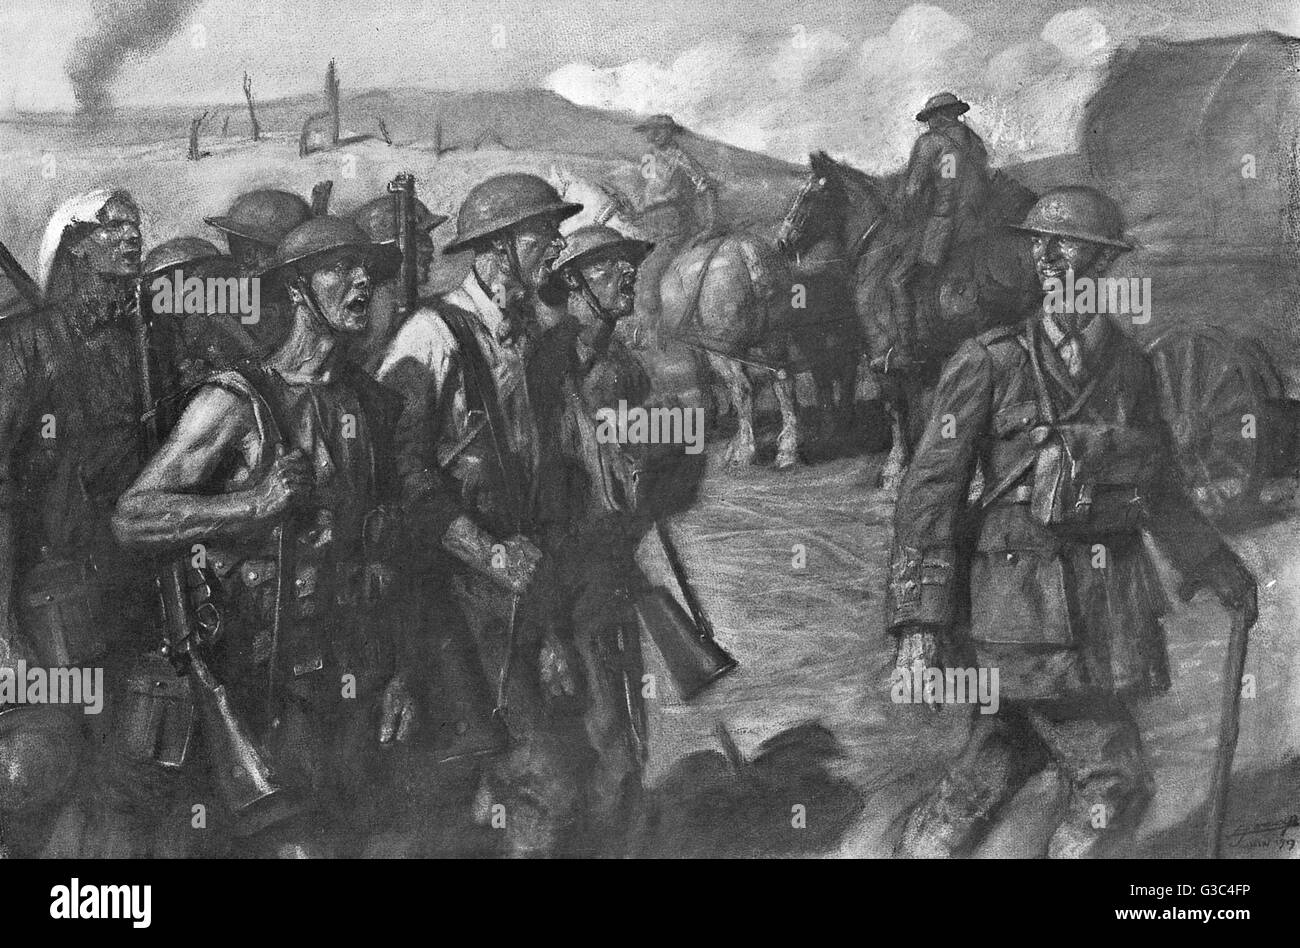 Canzoni del 1917 immagini e fotografie stock ad alta risoluzione - Alamy